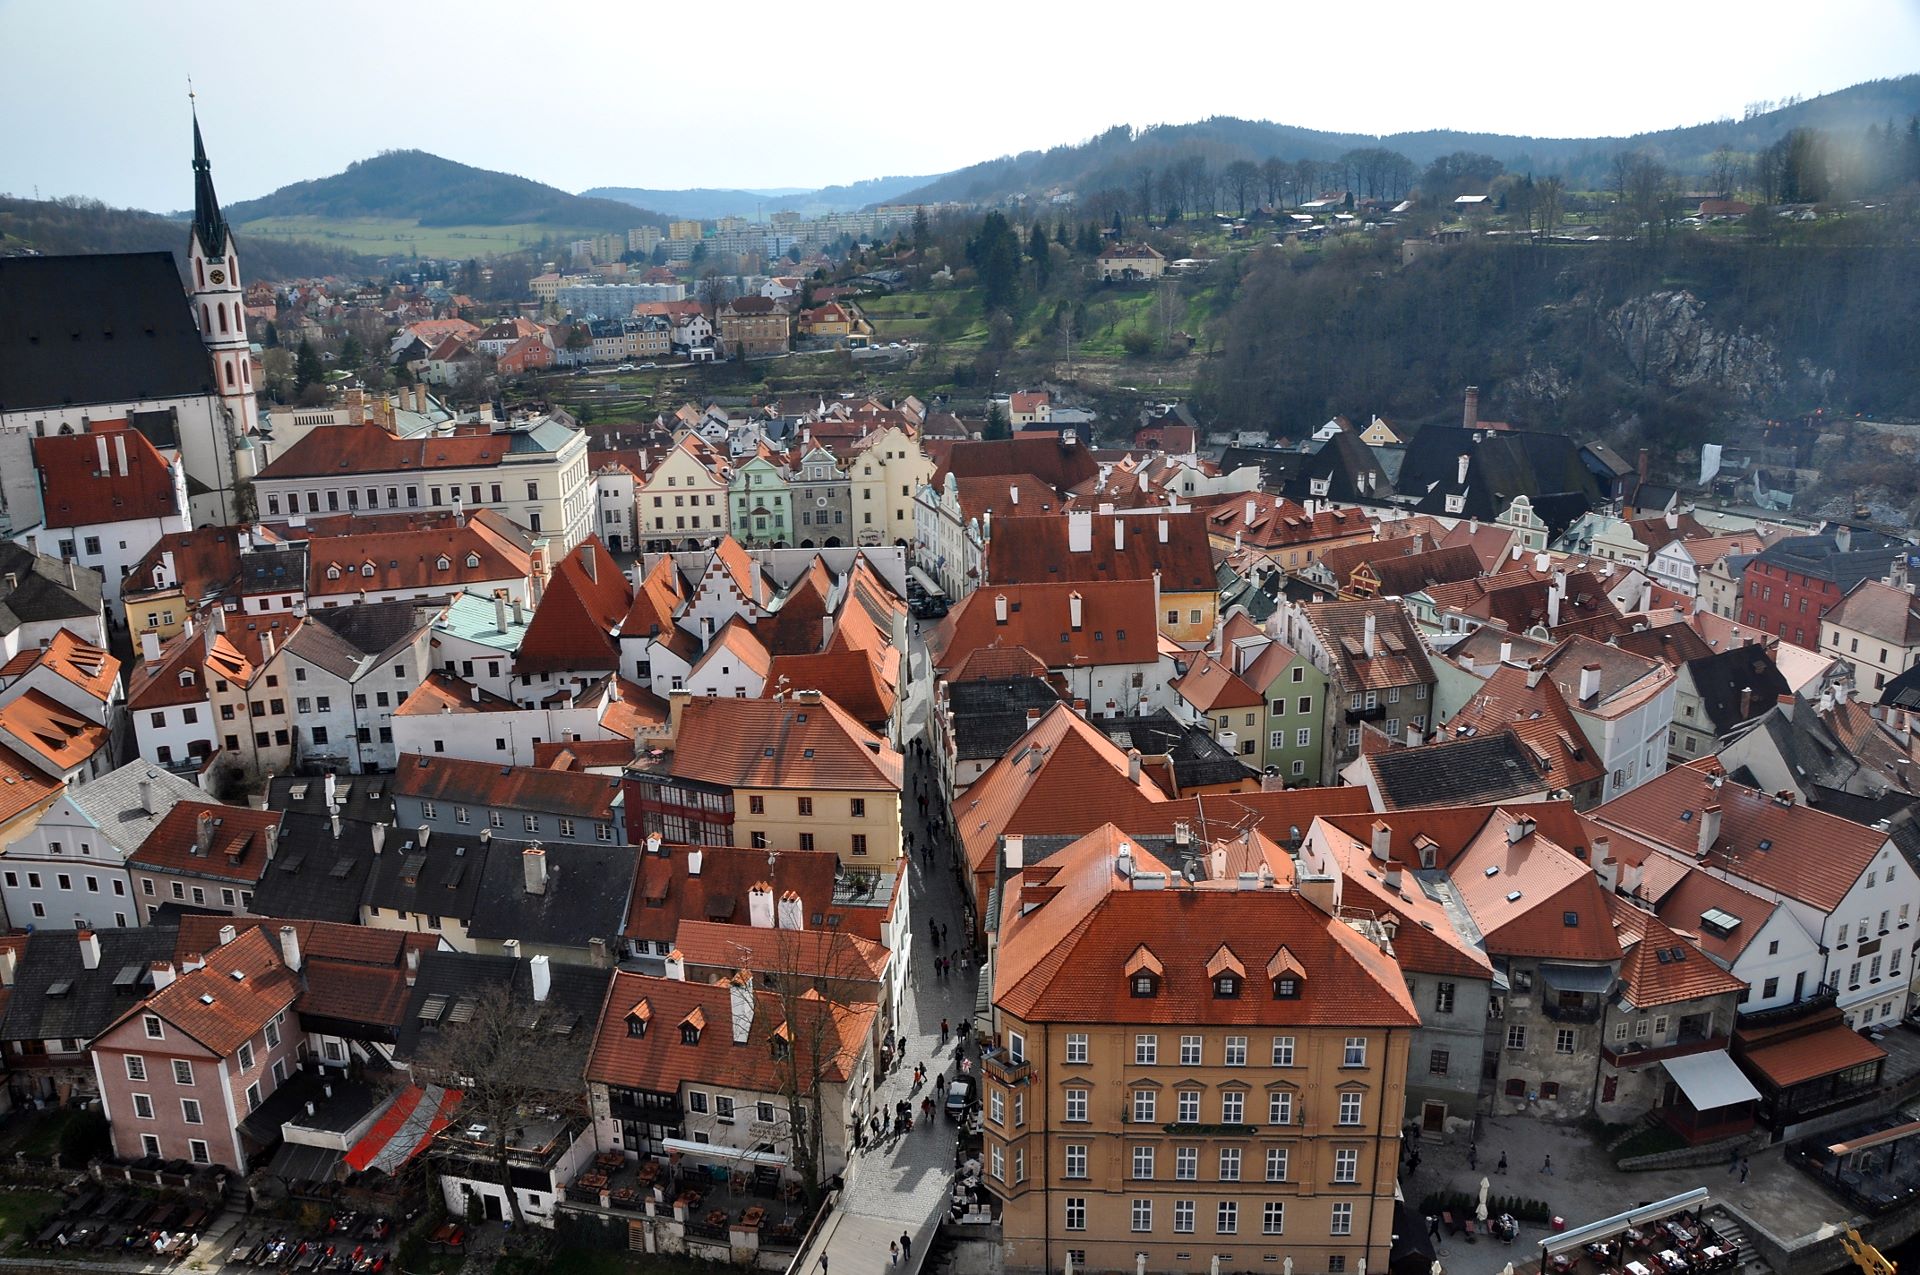 Wahrhaft zu Füssen liegt einem die Altstadt von Krumau, wenn man vom großen Turm runterblickt